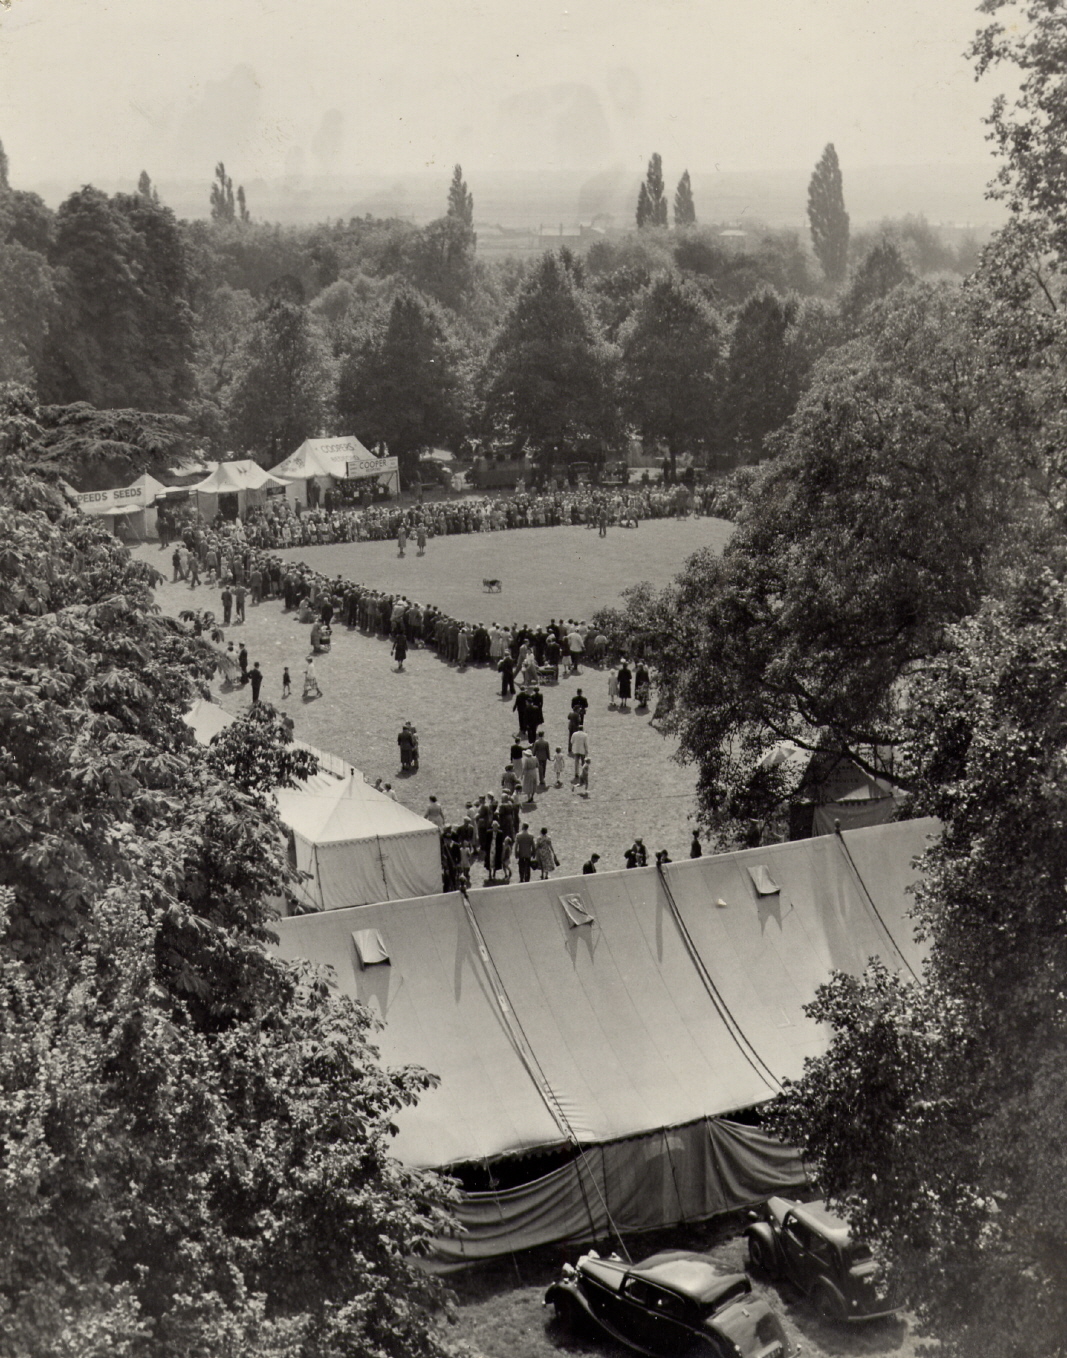 Show tents Sandy Show 1930s